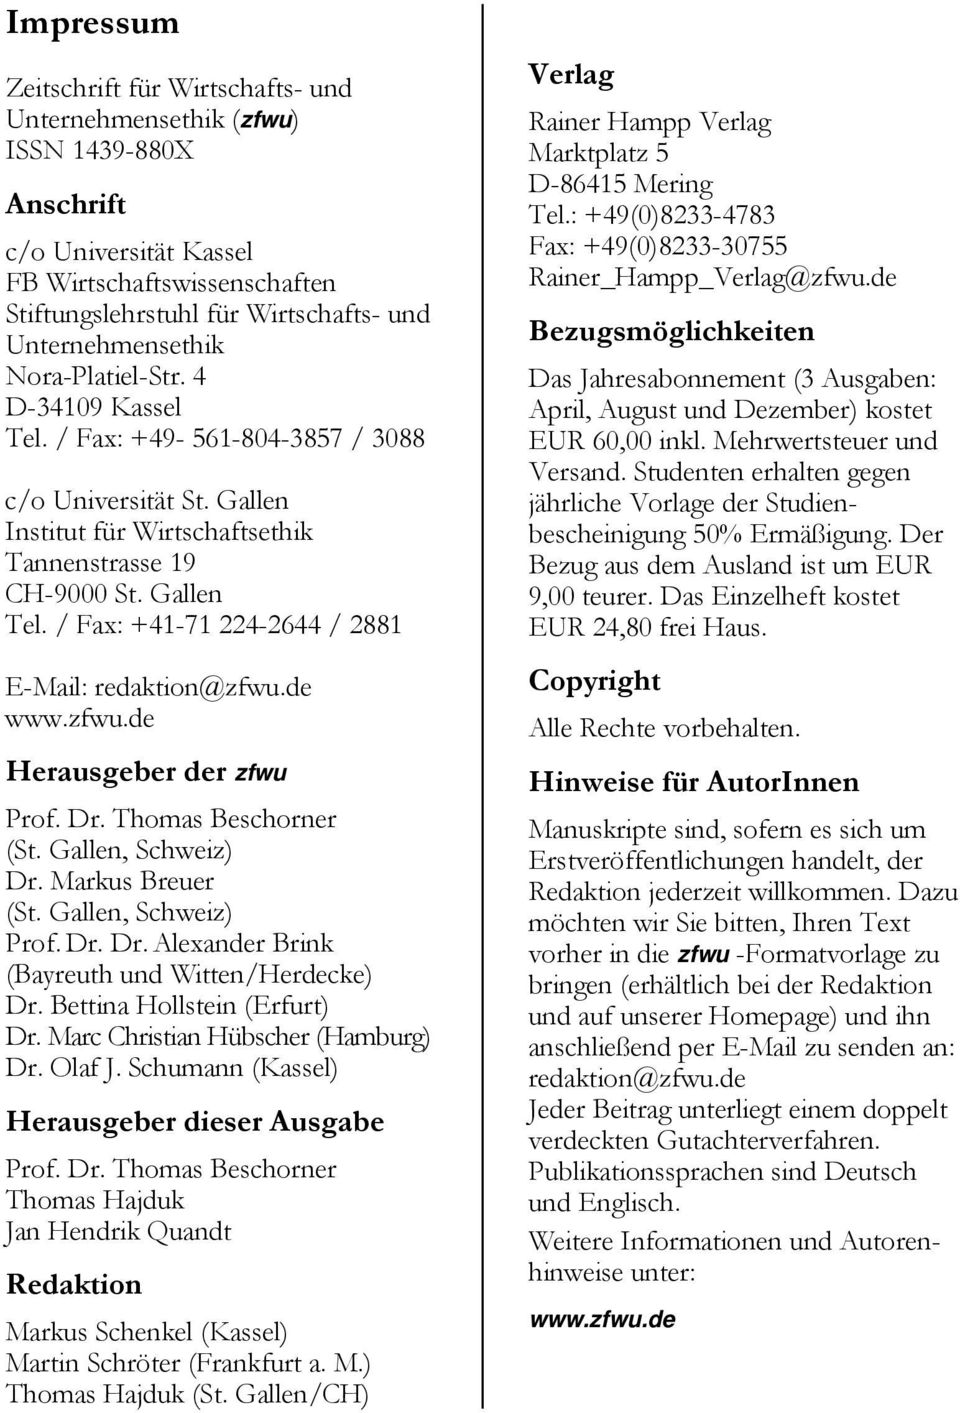 / Fax: +41-71 224-2644 / 2881 E-Mail: redaktion@zfwu.de www.zfwu.de Herausgeber der zfwu Prof. Dr. Thomas Beschorner (St. Gallen, Schweiz) Dr. Markus Breuer (St. Gallen, Schweiz) Prof. Dr. Dr. Alexander Brink (Bayreuth und Witten/Herdecke) Dr.